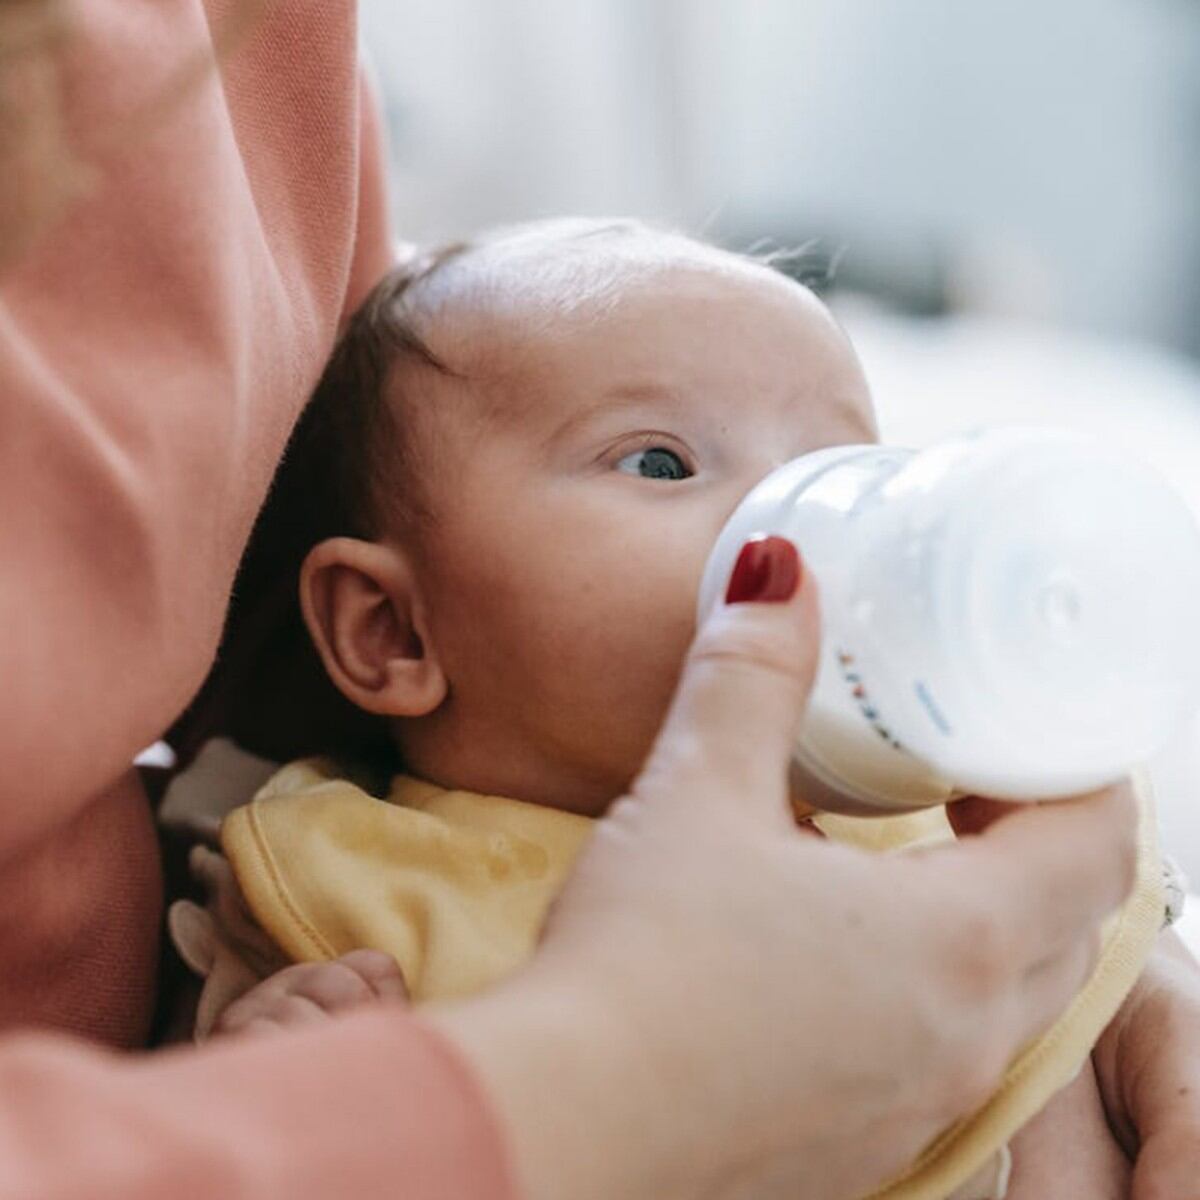 Cómo tenemos que preparar y dar el biberón a un recién nacido?